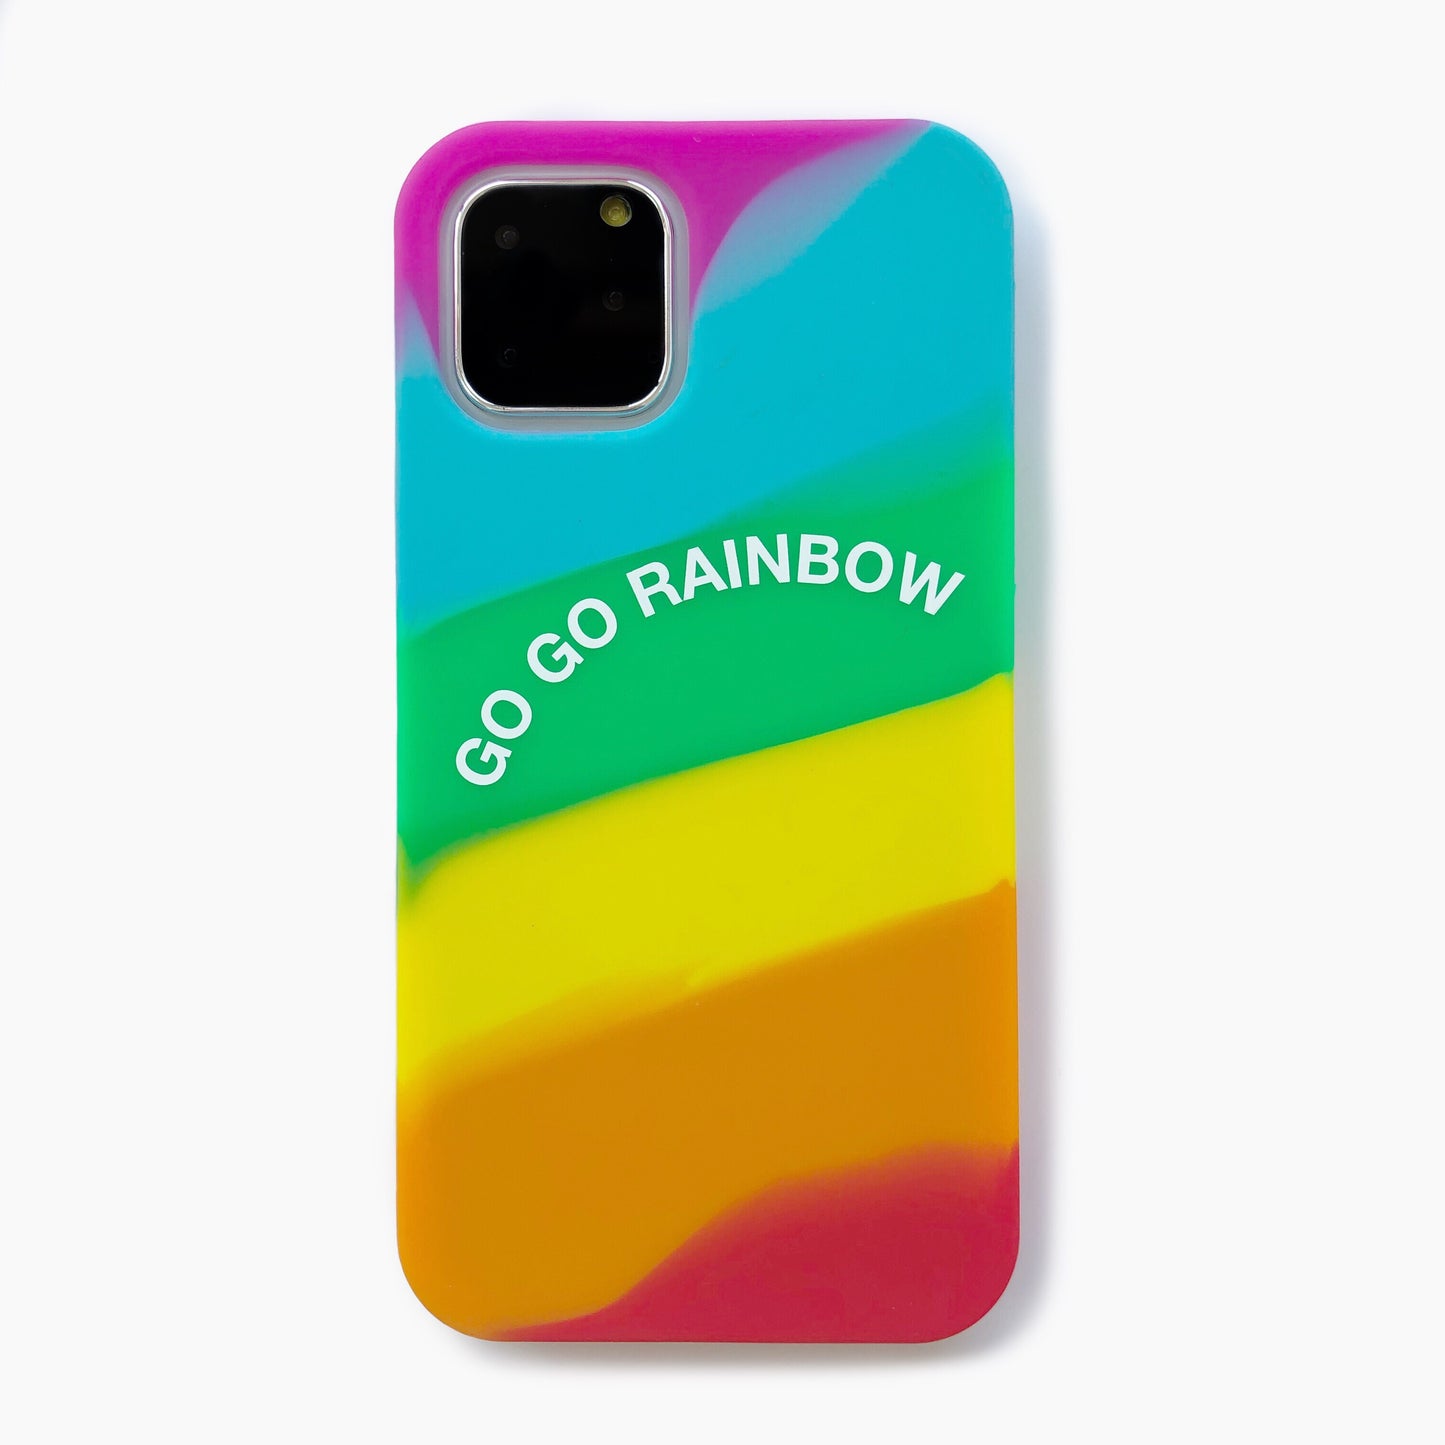 iPhone 11 Pro Simple Case - Go Go Rainbow (Bright)